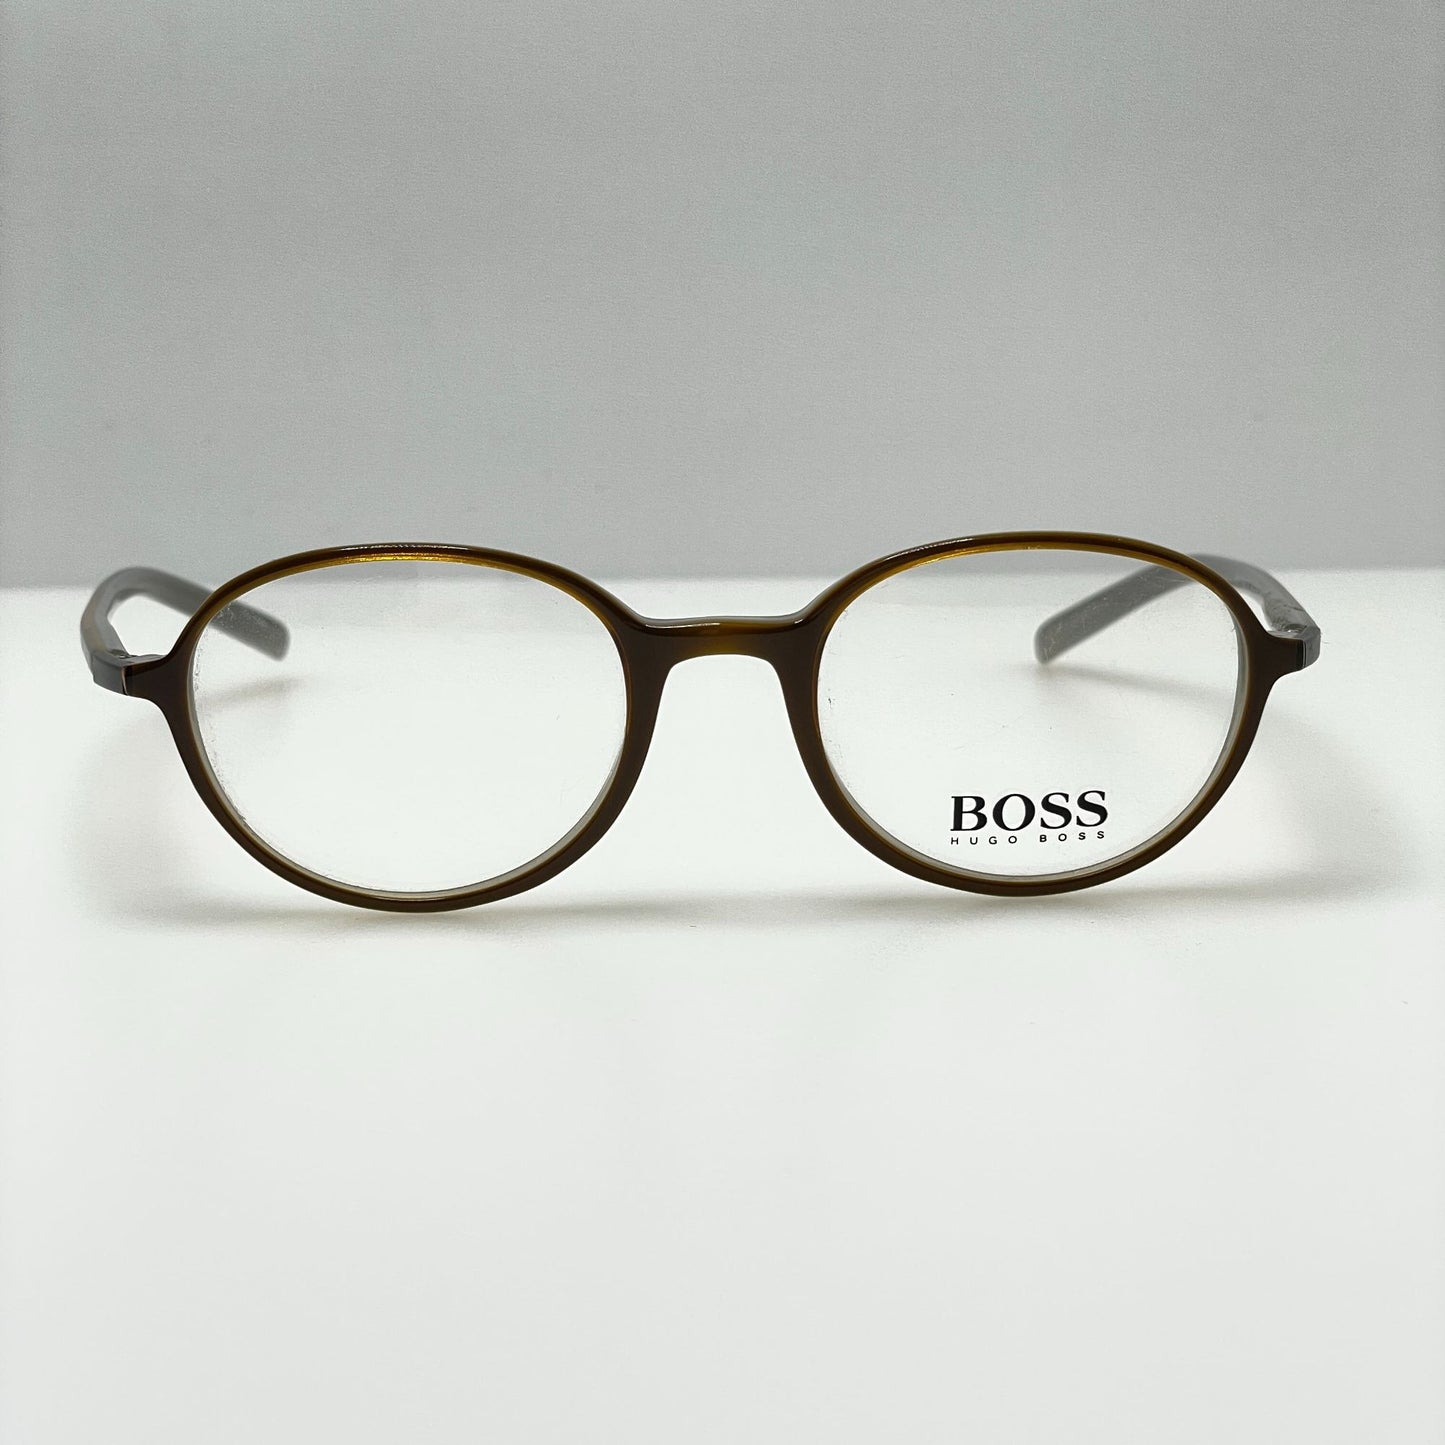 Hugo Boss Eyeglasses Eye Glasses Frames HB11090 OL 46-19-140